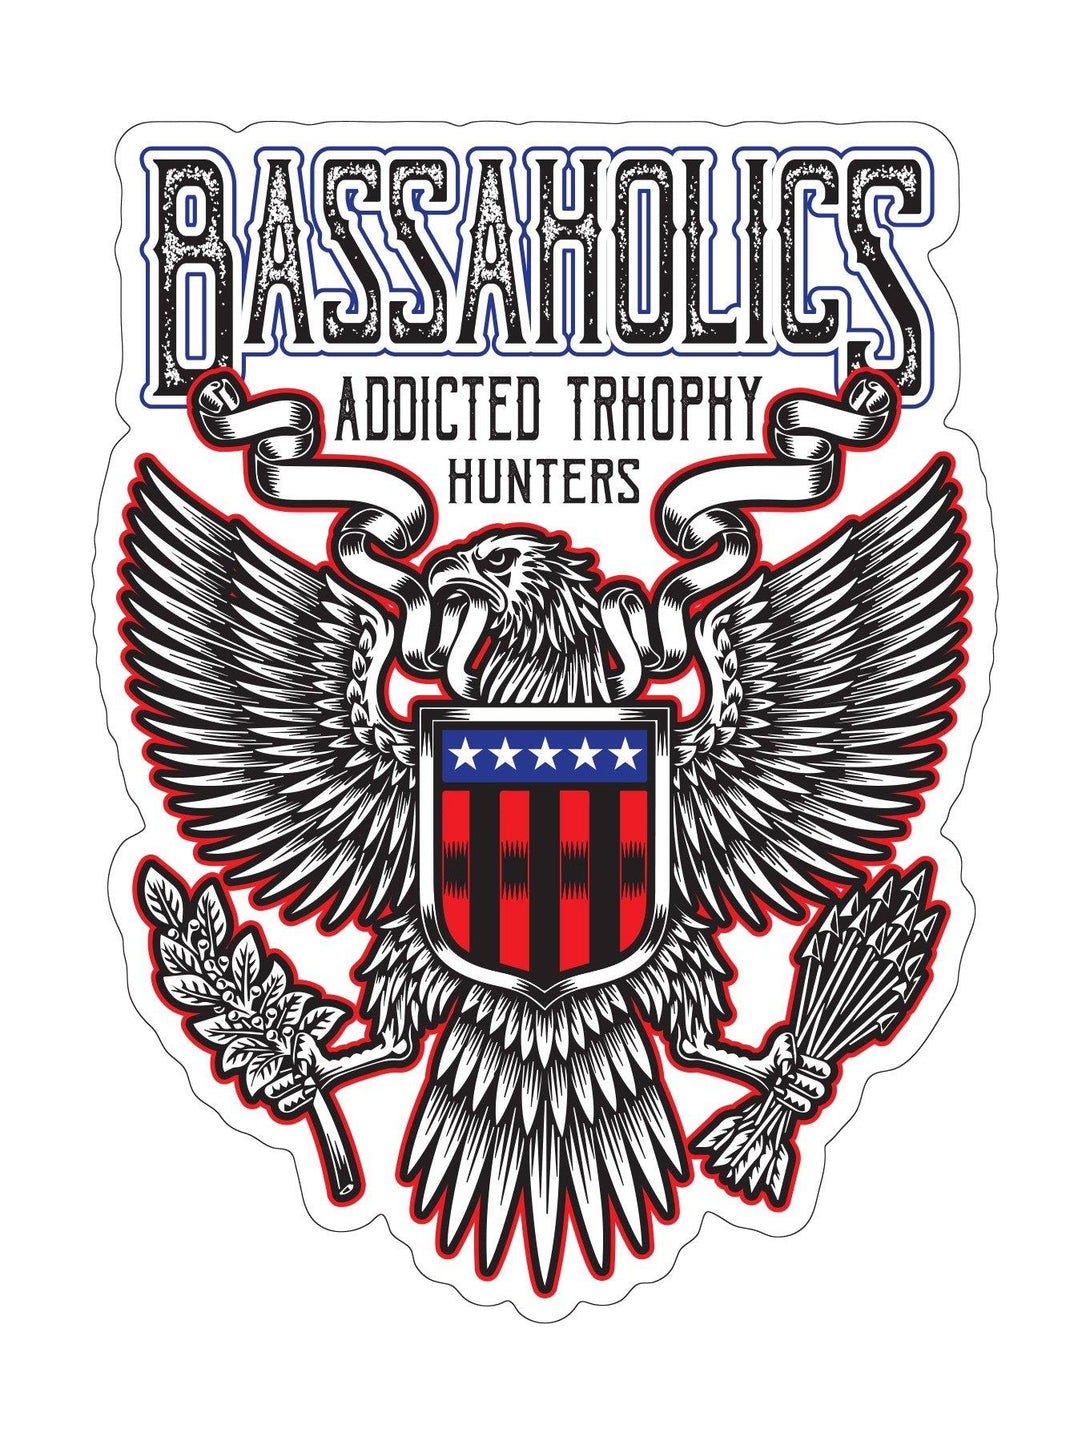 Iron Eagle Bass Fishing Sticker – Bassaholics